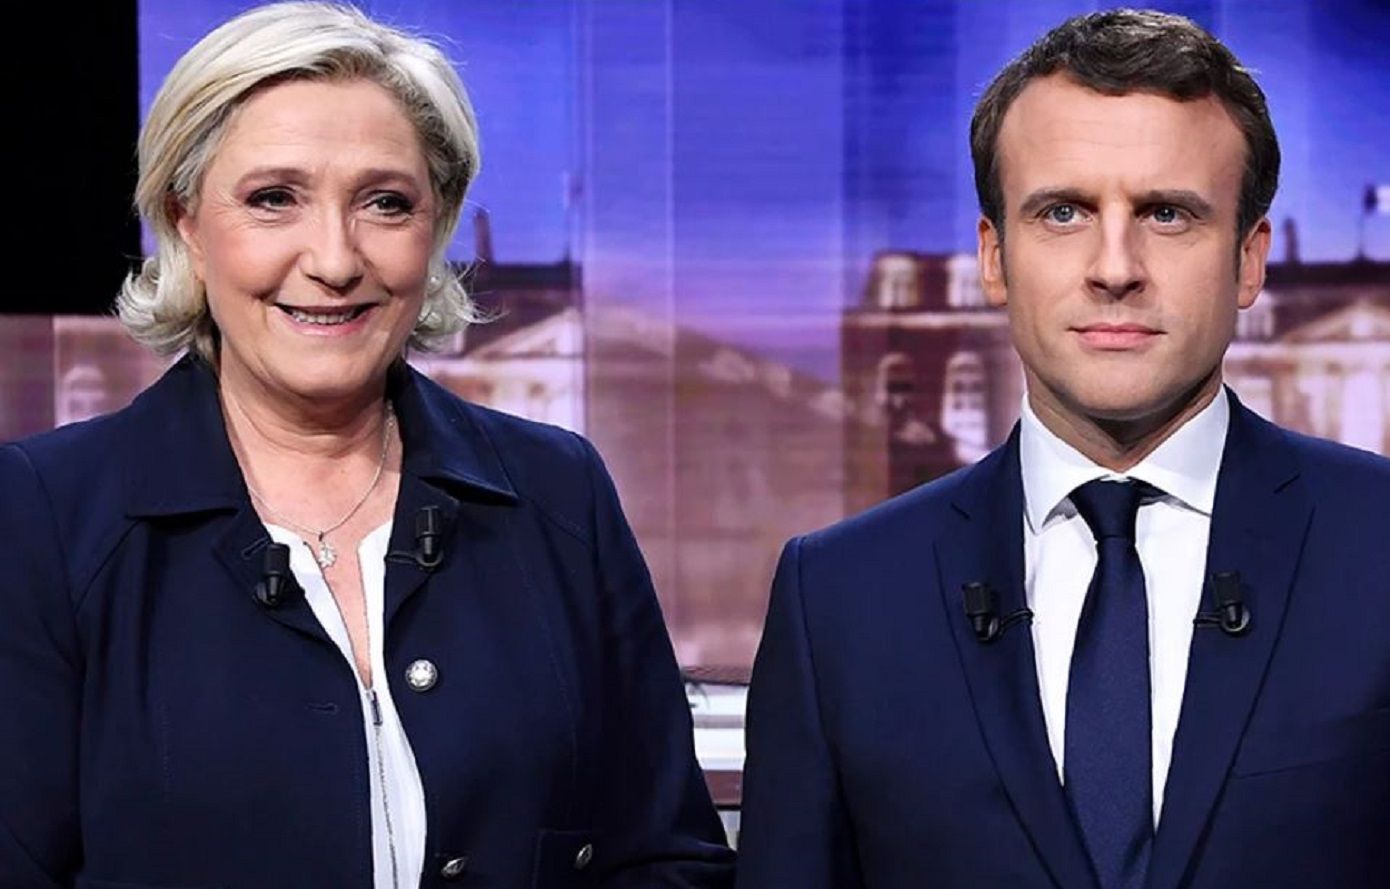 Εκλογές στη Γαλλία: Πρώτο με 34% το κόμμα της Λεπέν, σύμφωνα με τα πρώτα exit polls &#8211; Στην τρίτη θέση το κόμμα του Μακρόν